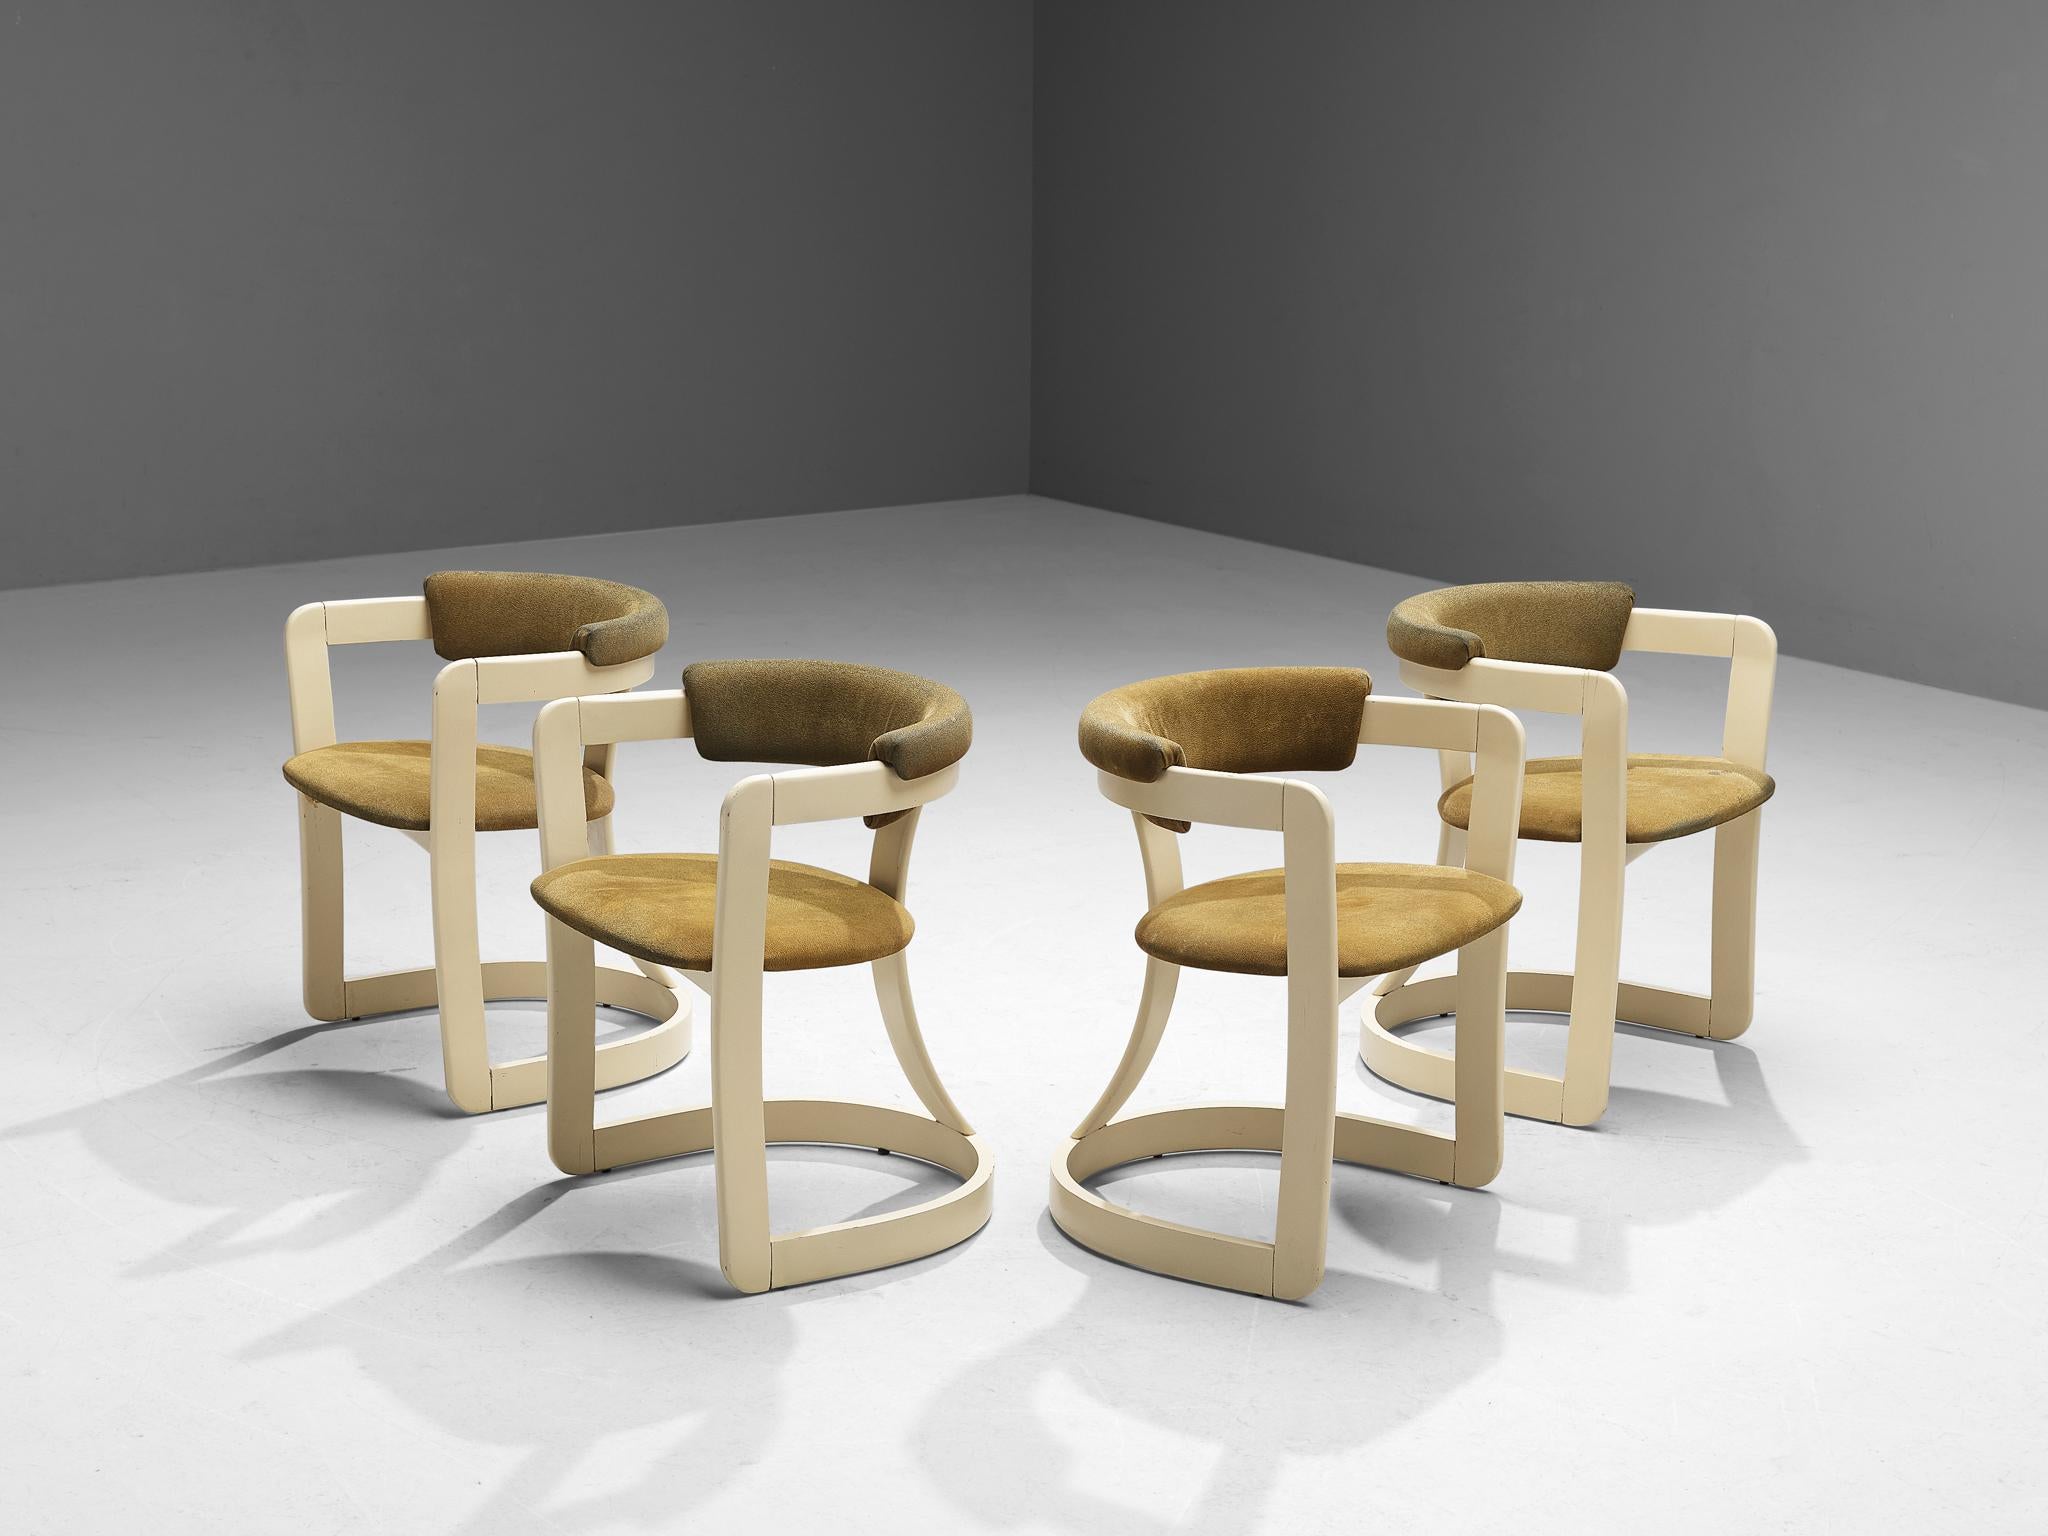 Satz von vier Esszimmerstühlen, Alcantara, lackiertes Holz, Italien, 1970er Jahre

Diese Sessel nehmen die Ästhetik der von Augusto Savini für Pozzi entworfenen 